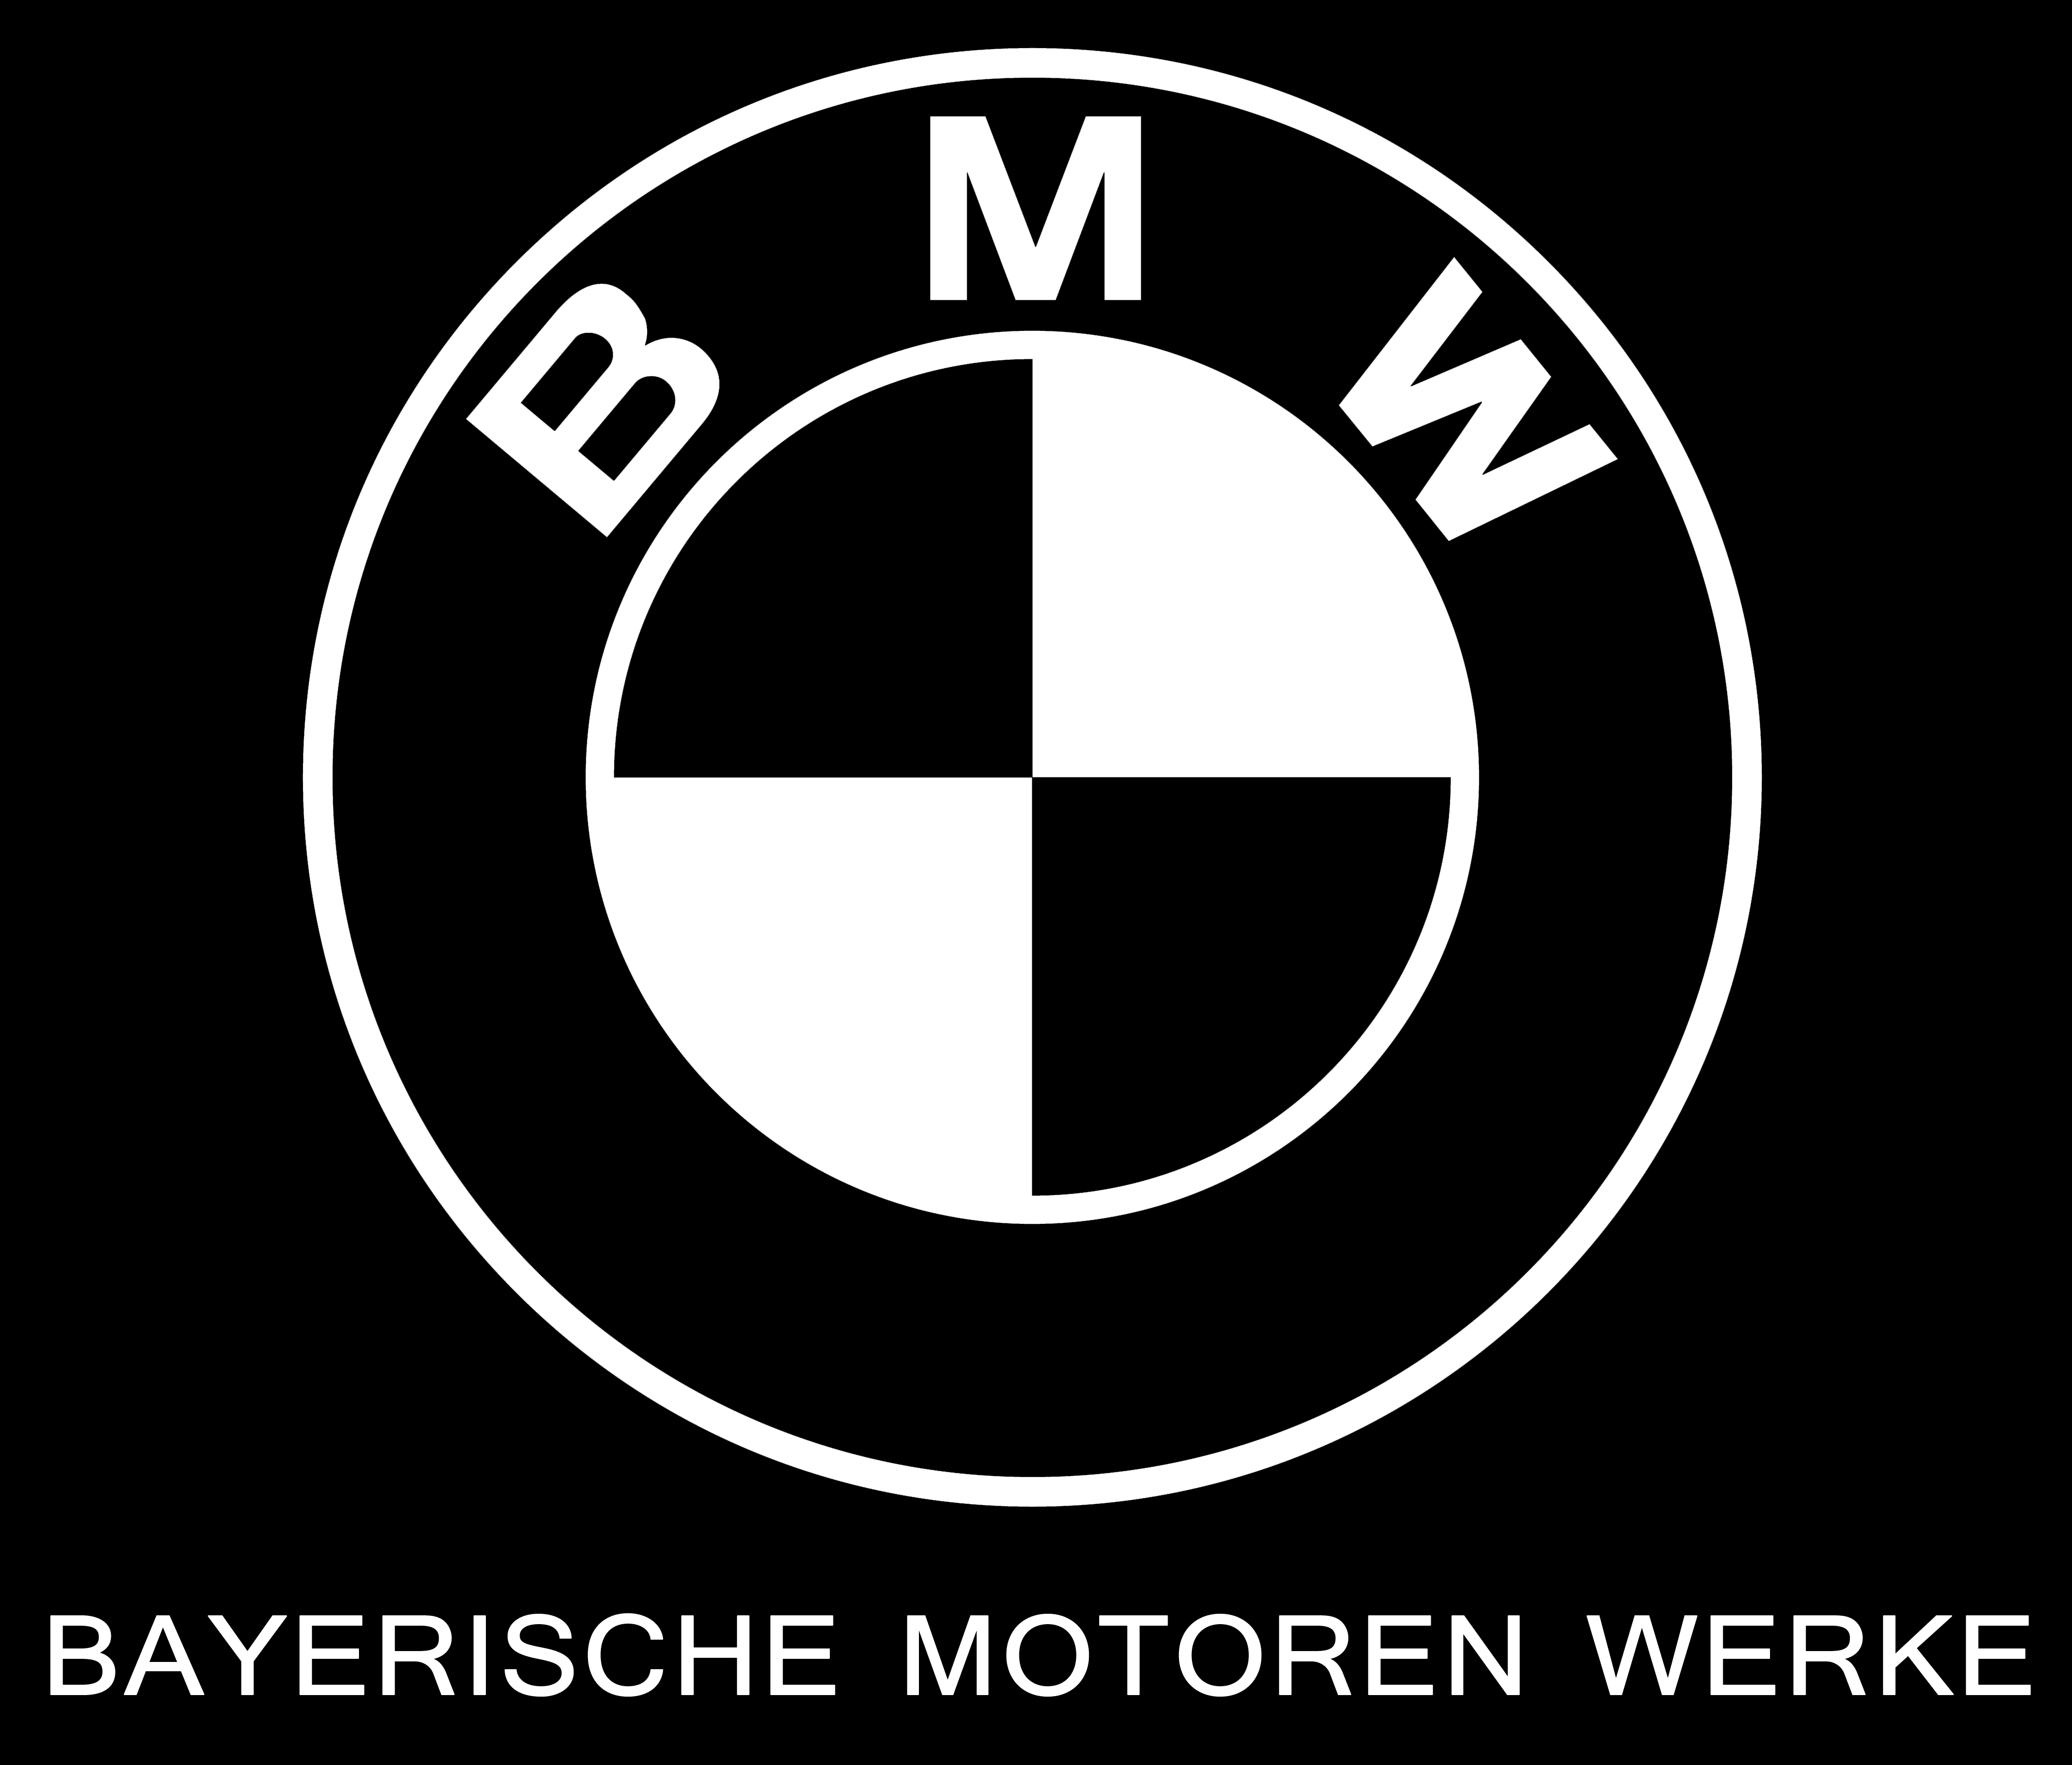 宝马(BMW)发布了一个新的黑白标志，上面写着“Bayerische Motoren Werke”，将被用于其高端车型。新的徽章将取代目前在整个范围内使用的传统蓝白标志。 虽然这家汽车制造商还没有提到哪些车型会佩戴这一徽章，但我们预计它将出现在即将推出的7系、X7、8系和i8上。X7将成为宝马的旗舰SUV，肯定是一款高端车型。 重新设计的logo让人回想起100多年前的公司风格。据宝马公司介绍，这款全新的黑白徽标将彰显这个德国品牌悠久而自豪的历史。